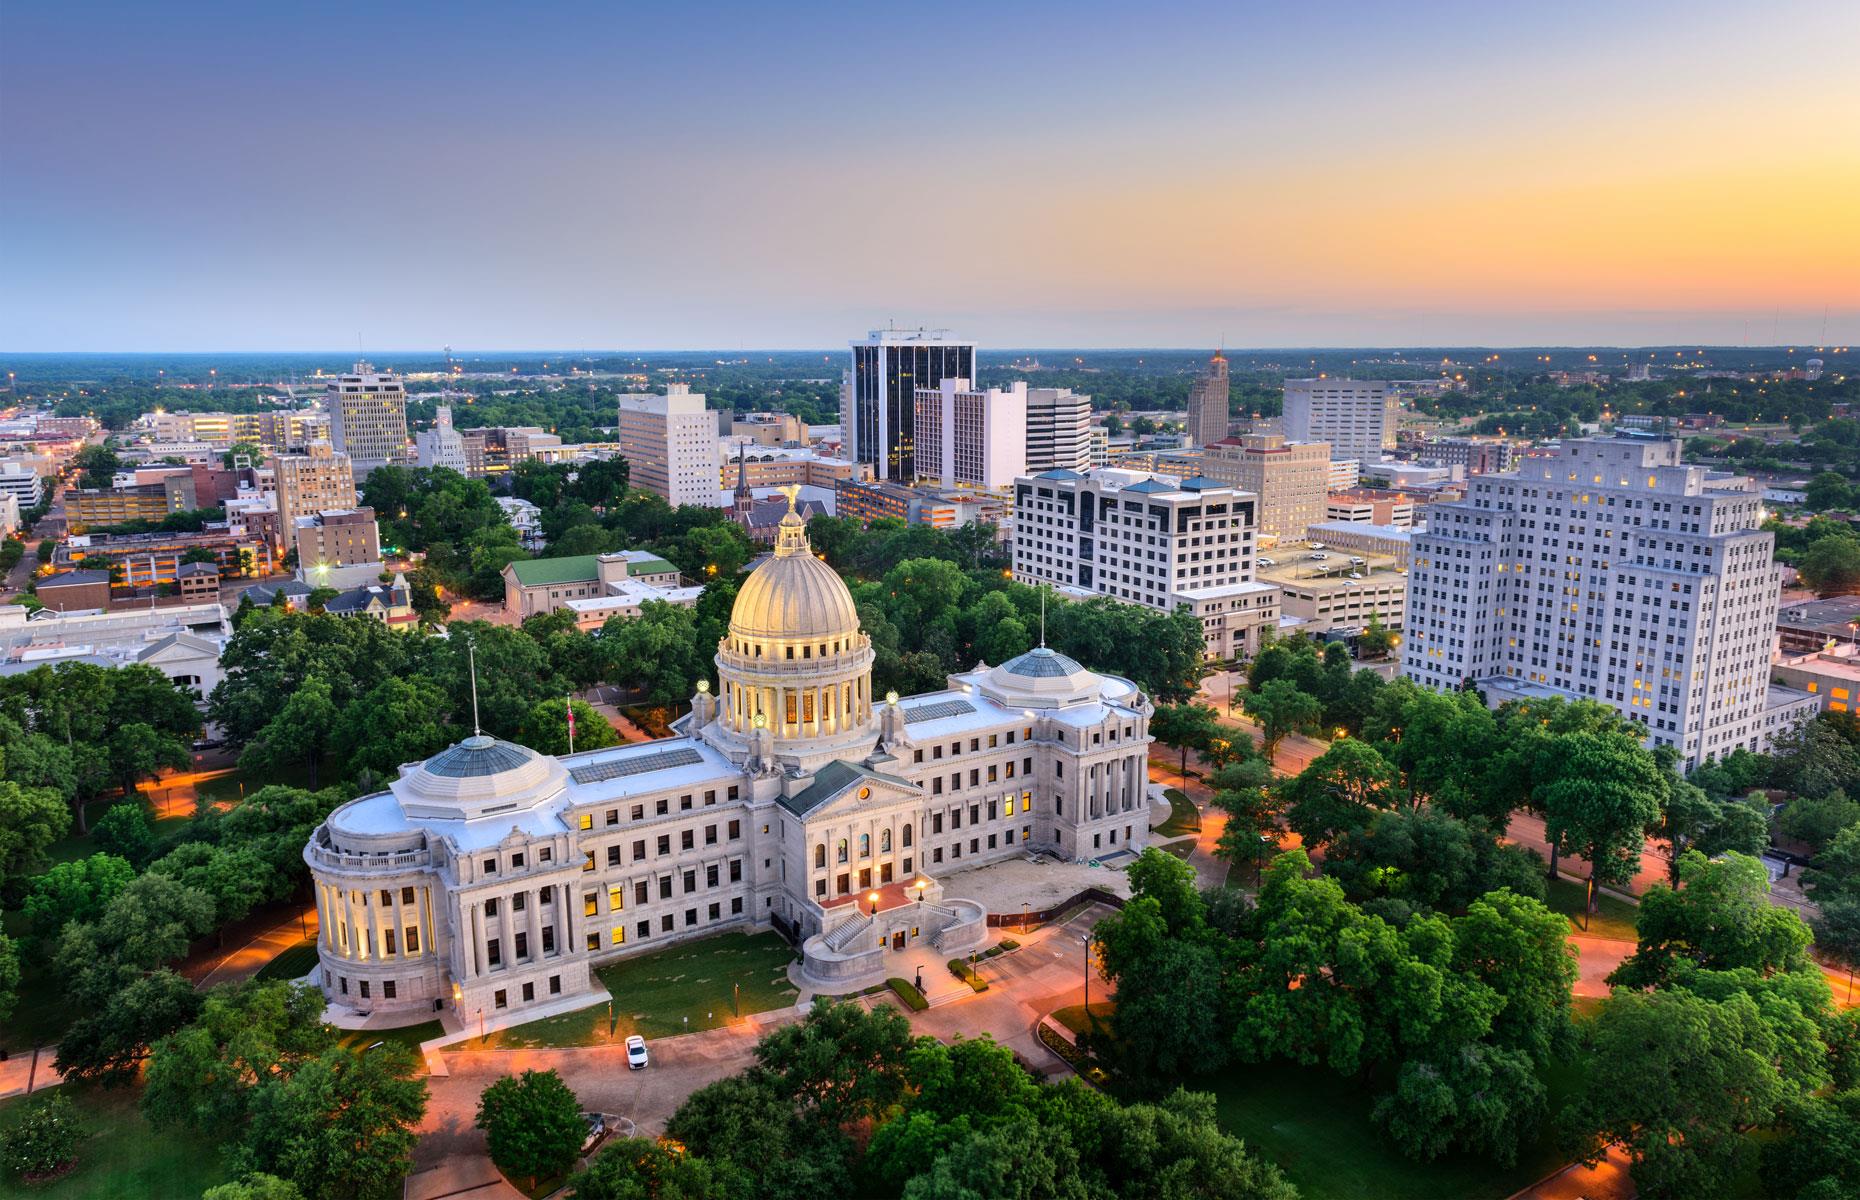 Most tax-friendly: Mississippi